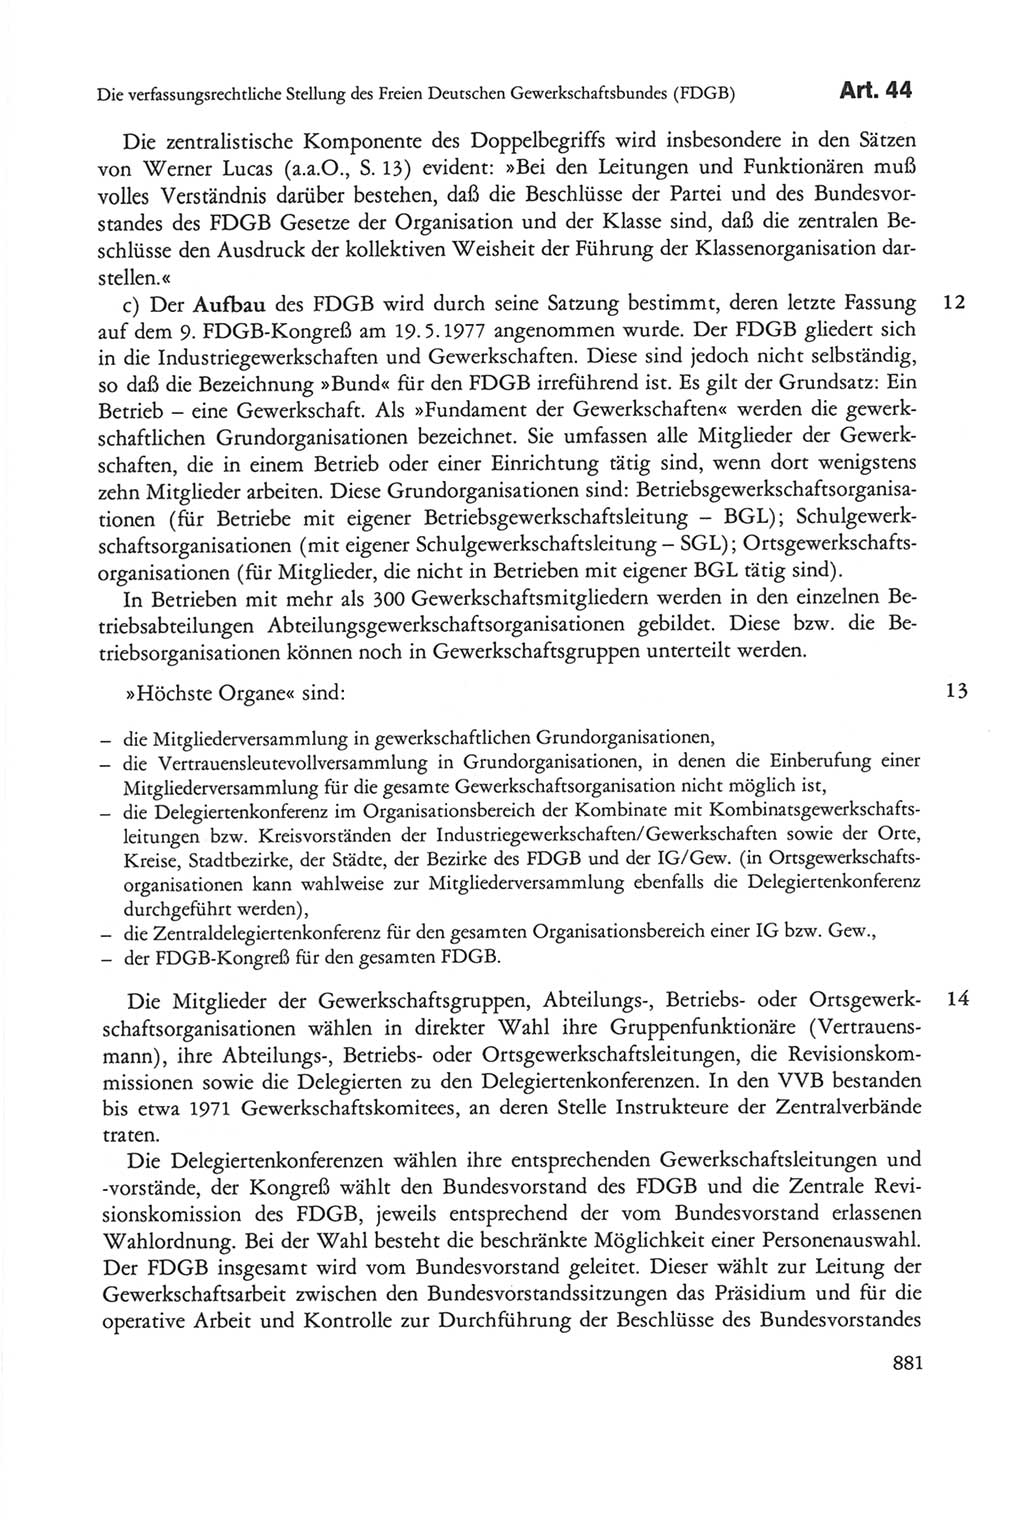 Die sozialistische Verfassung der Deutschen Demokratischen Republik (DDR), Kommentar 1982, Seite 881 (Soz. Verf. DDR Komm. 1982, S. 881)